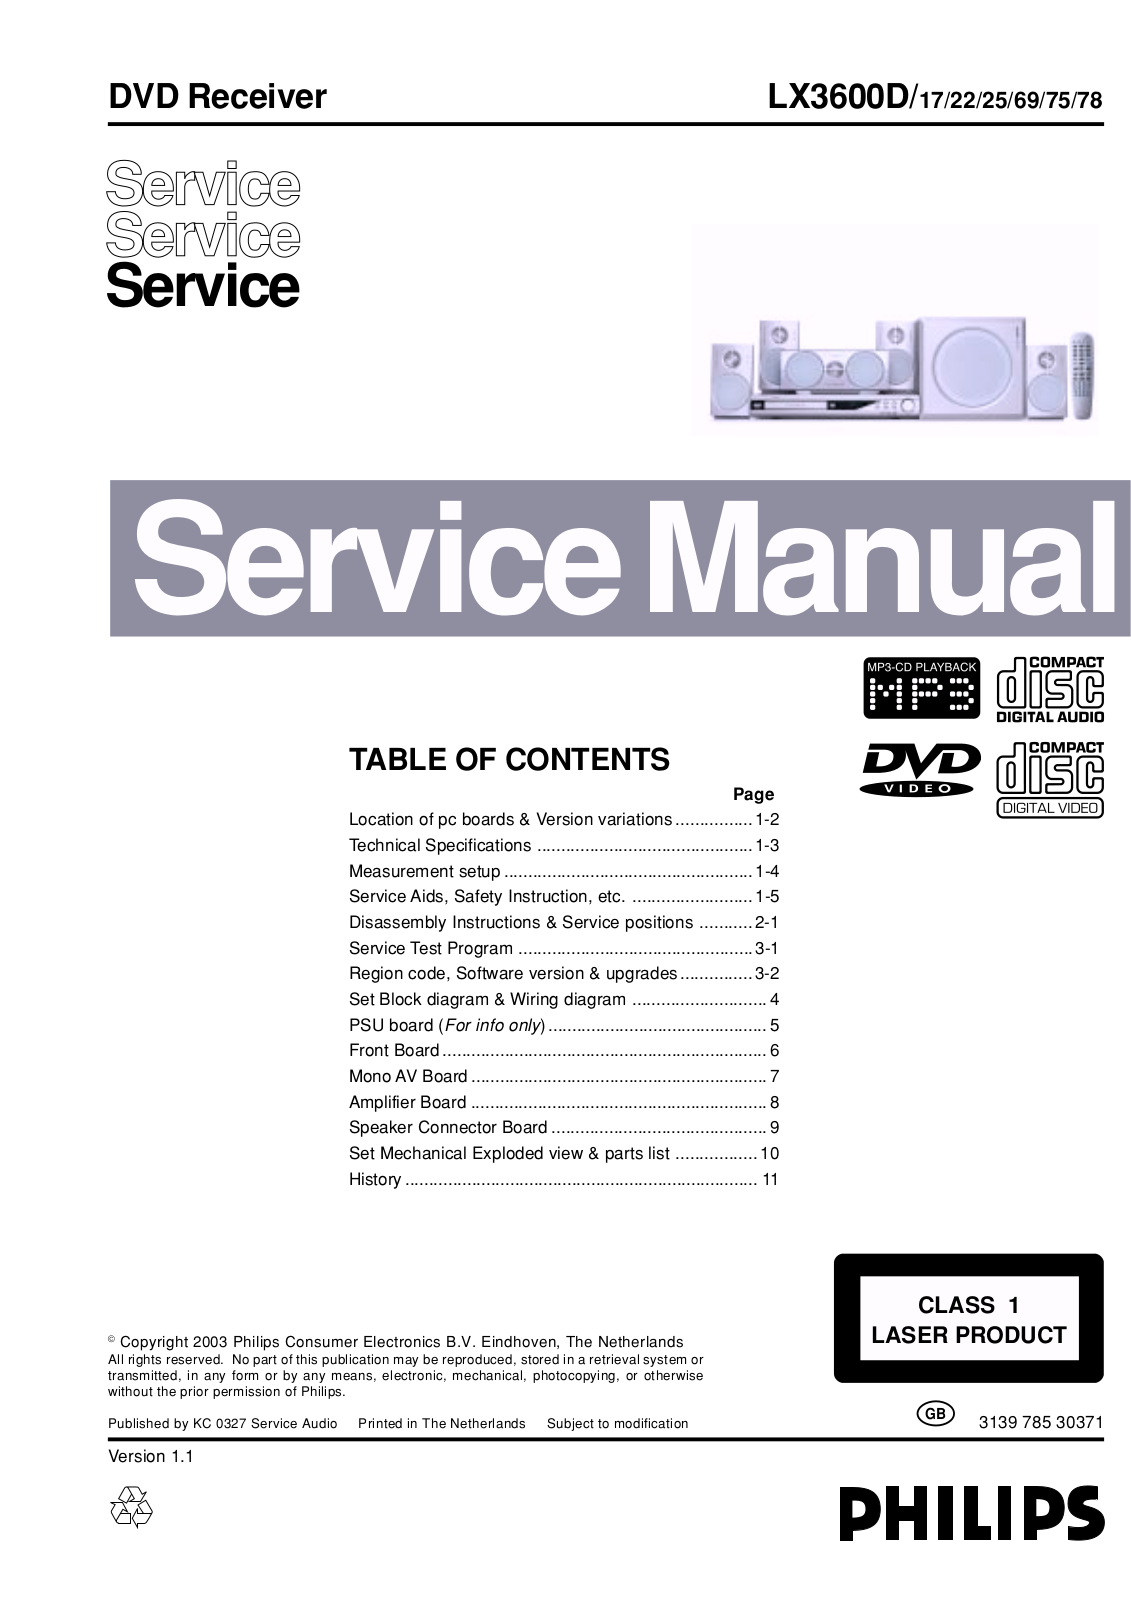 Philips LX3600D-17, LX3600D-22, LX3600D-25, LX3600D-69, LX3600D-75 Service Manual